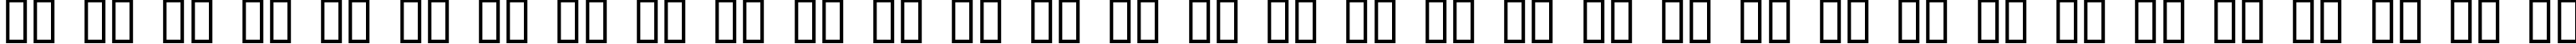 Пример написания русского алфавита шрифтом HondaC